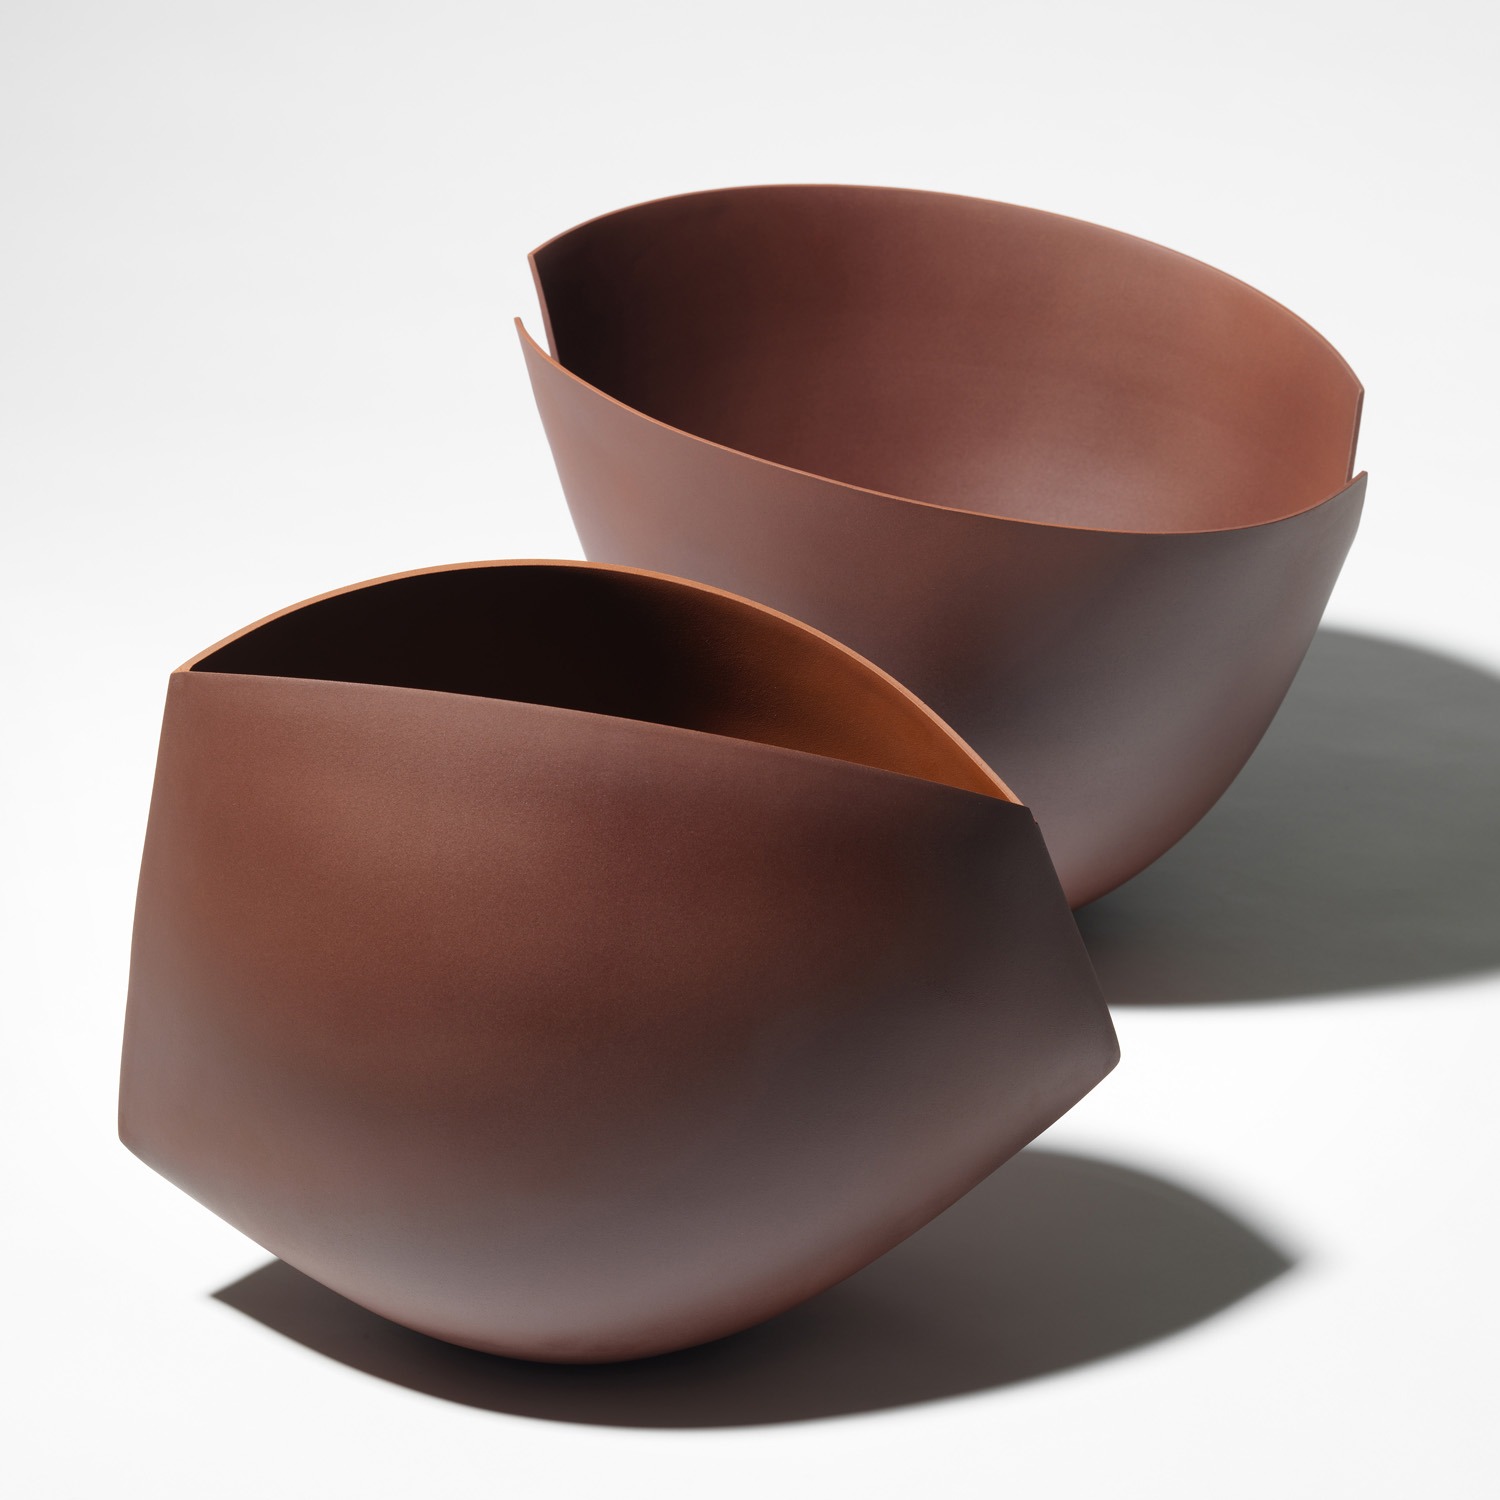 Ann Van Hoey -ceramics - contemporary ceramics - new ceramics - ceramic design - ceramic scuplture